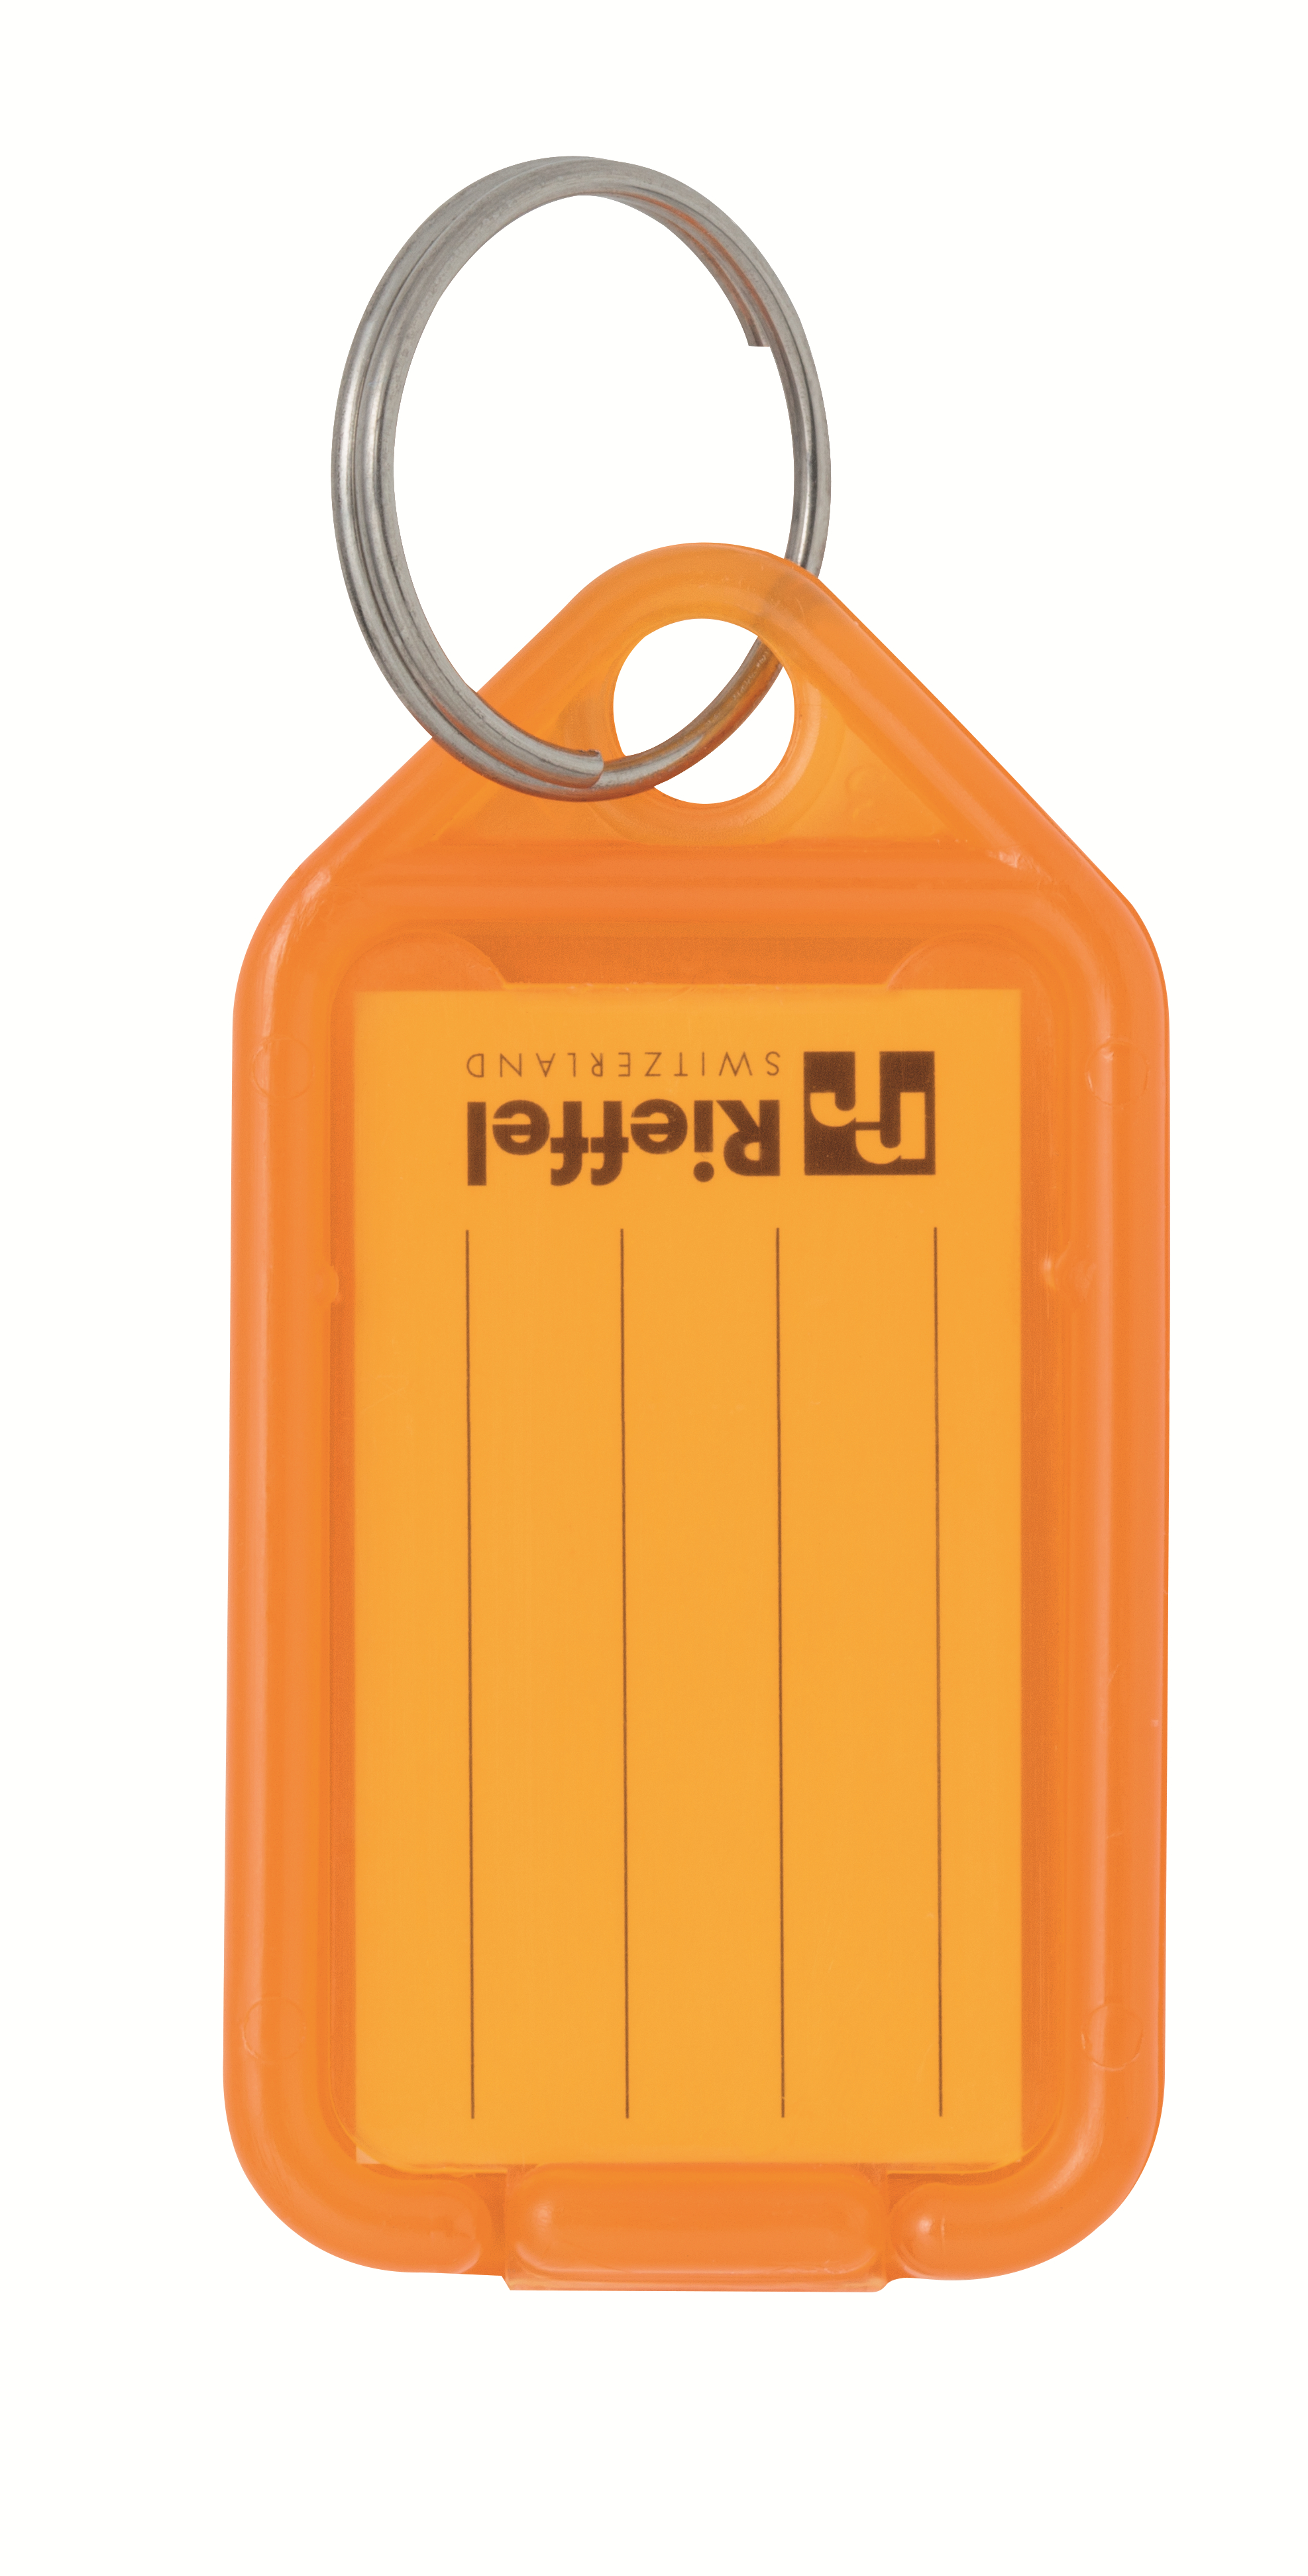 RIEFFEL SWITZERLAND Etiquettes clé 38x22mm KT 1000 ORANGE orange 100 pcs. orange 100 pcs.